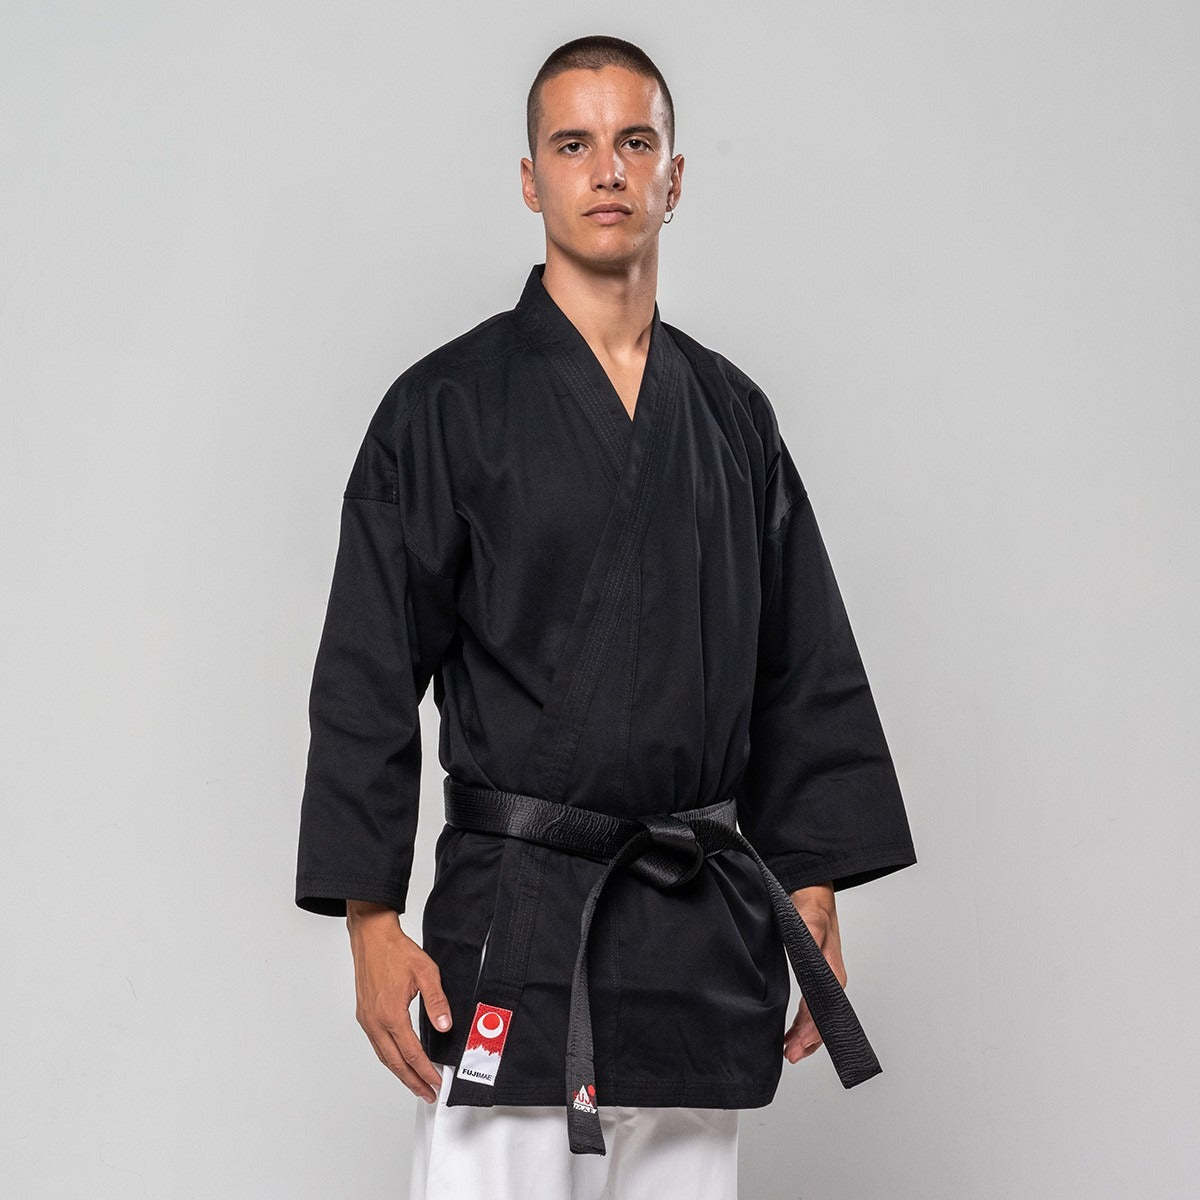 Fuji Mae Karate Jacke - Training - Weiß